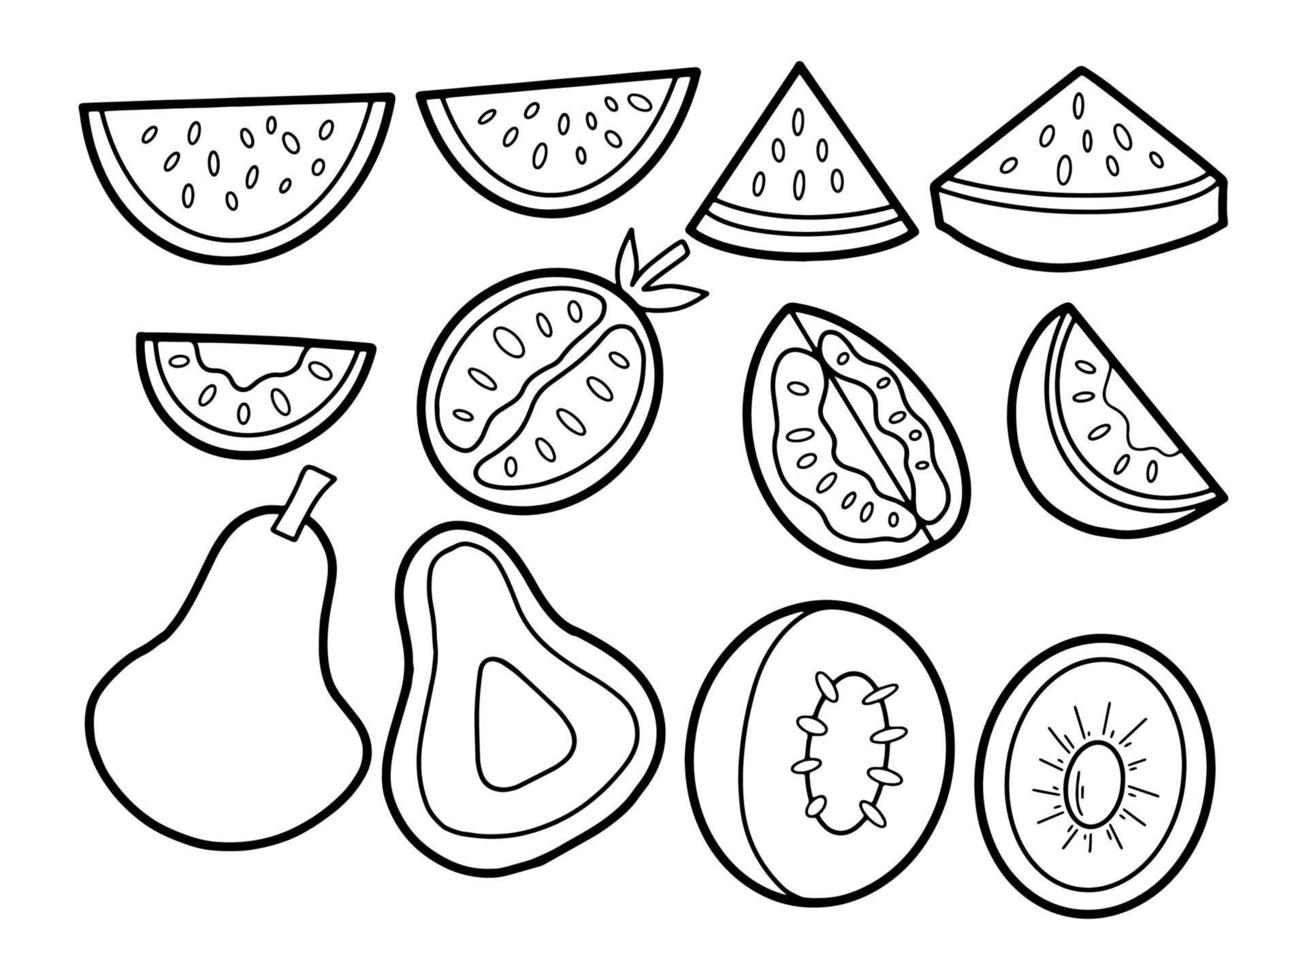 coleção de ilustração de doodle de frutas e legumes fatiadas vetor